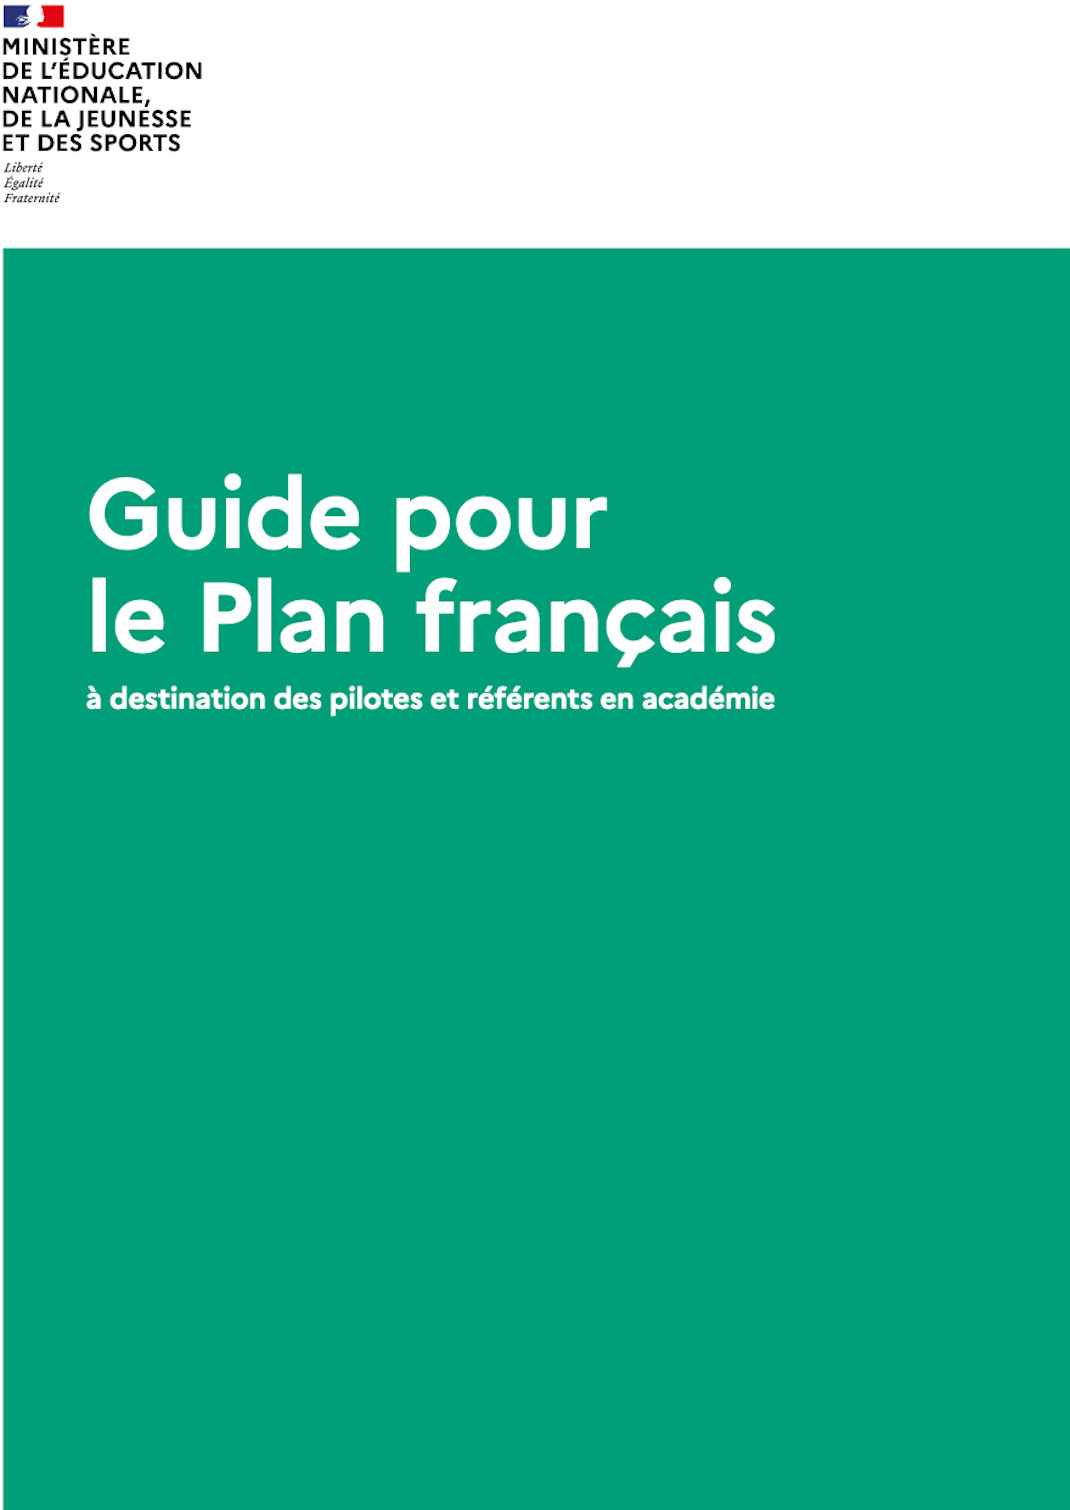 Guide pour le Plan français